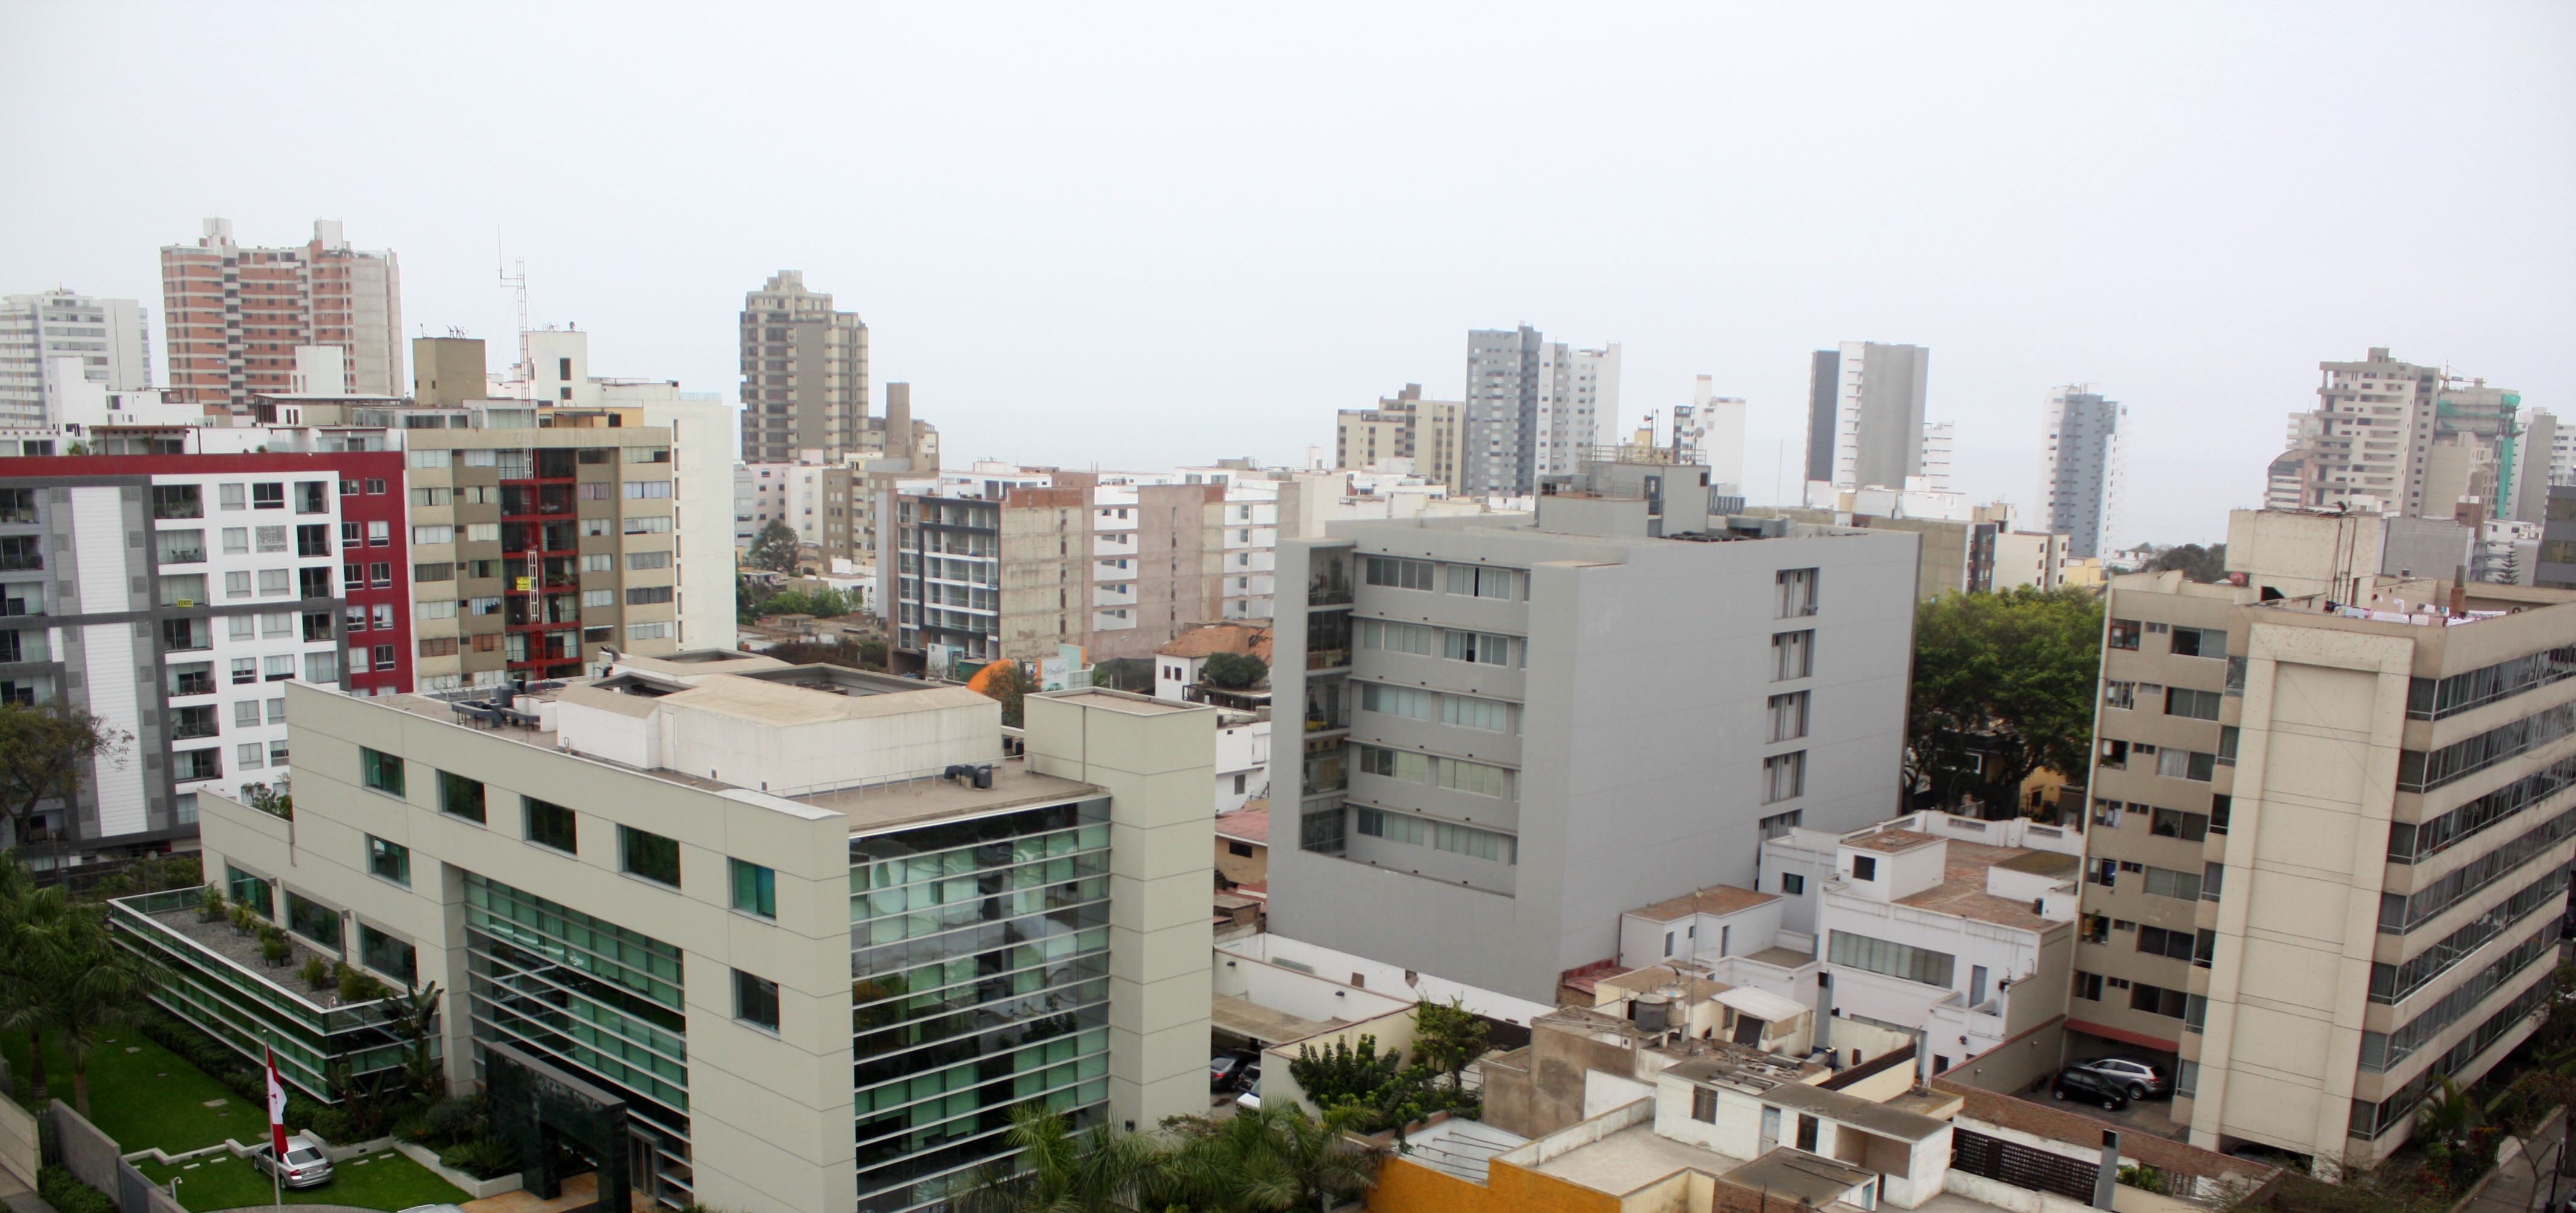 File:Urban View Lima Peru Cityscape.jpg - Wikimedia Commons